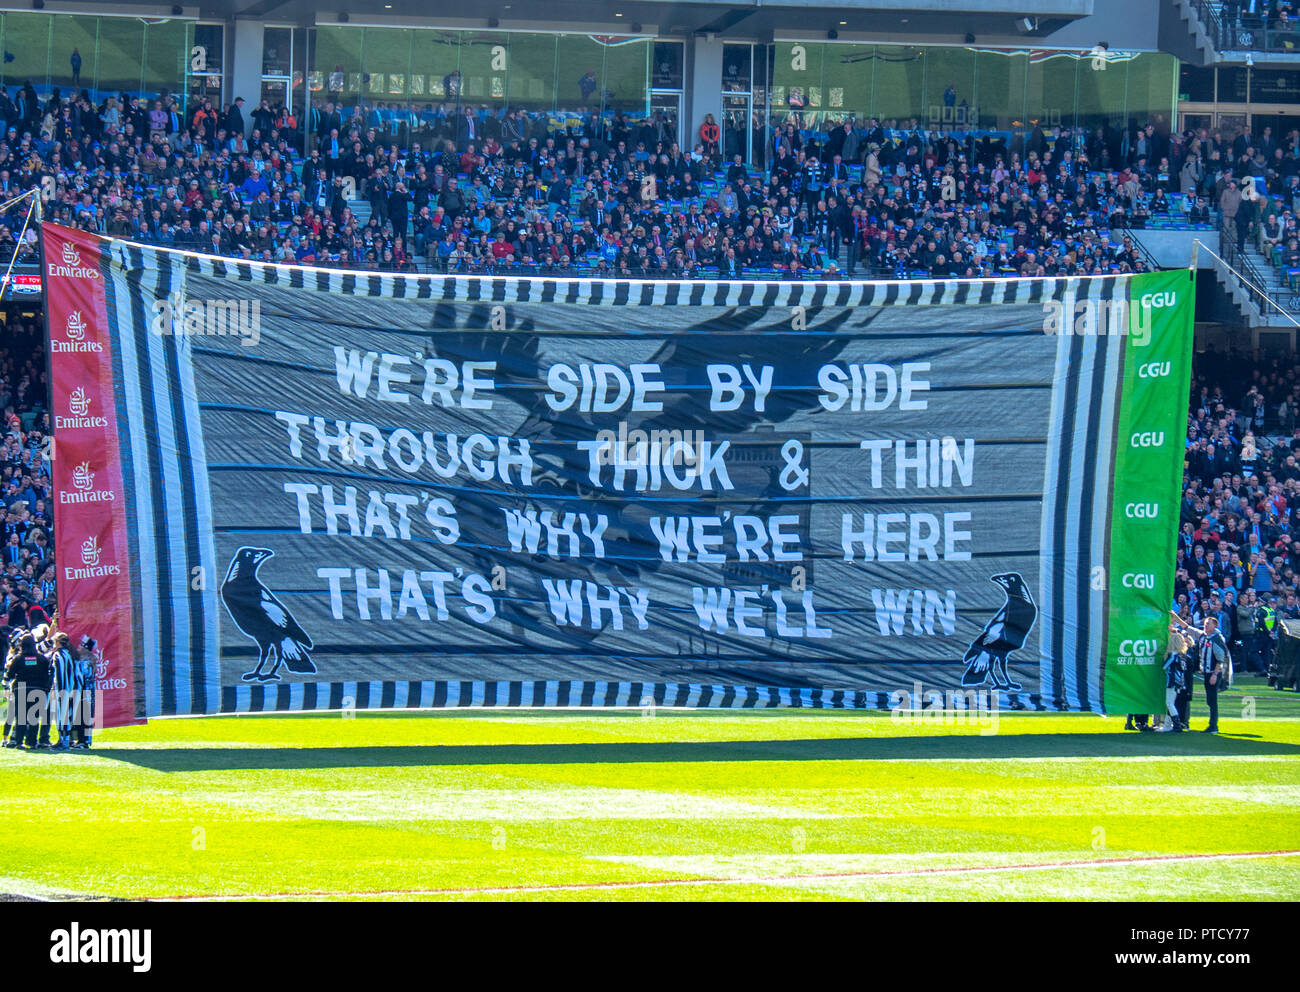 Collingwood football club banner in 2018 AFL Grand Final di MCG Melbourne Victoria Australia. Foto Stock